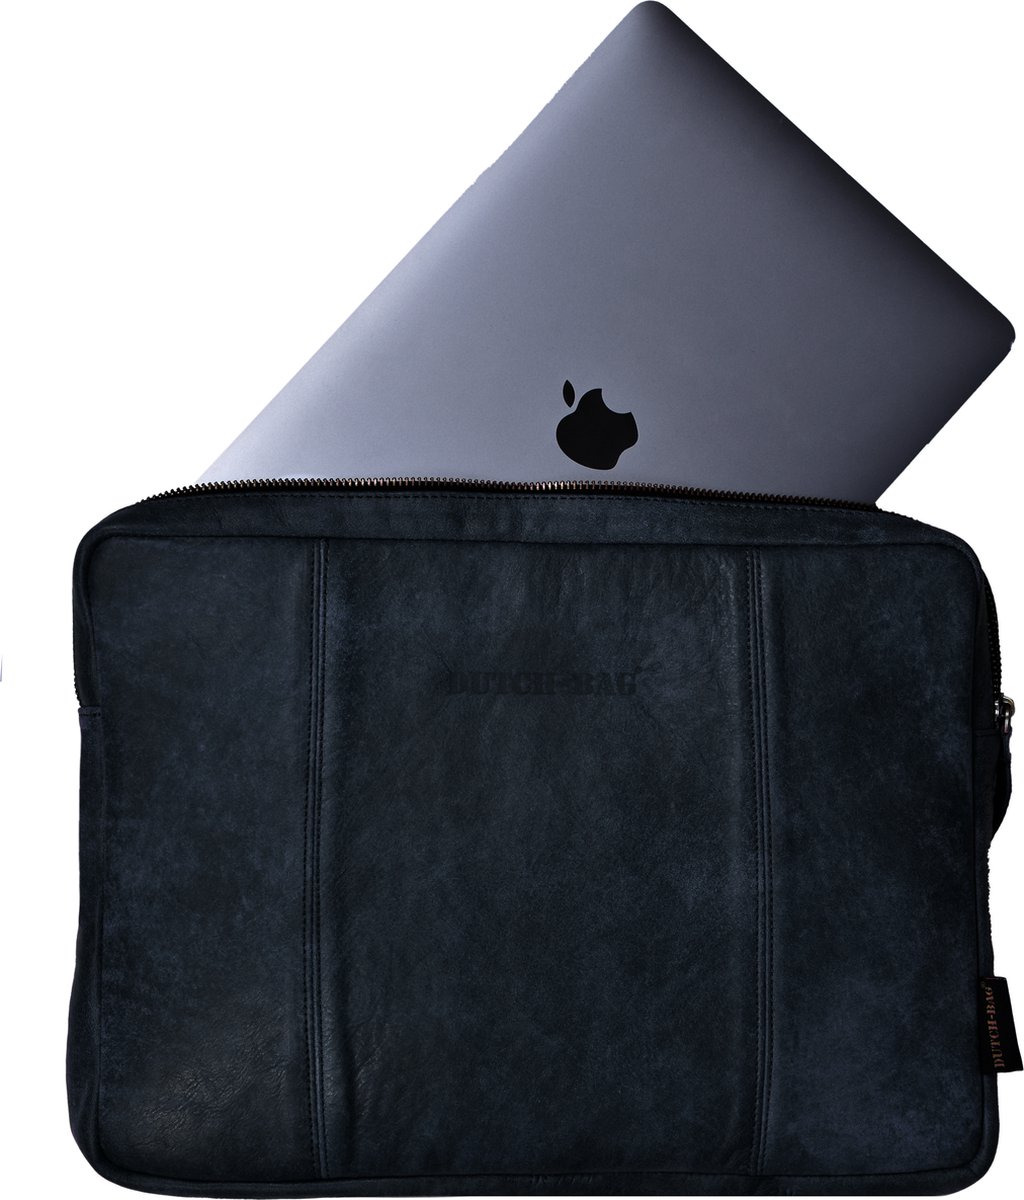 Dutch-Bag Leren Laptop Sleeve Zwart Den Haag 14 inch - Handgemaakt in NL - Premium Leer